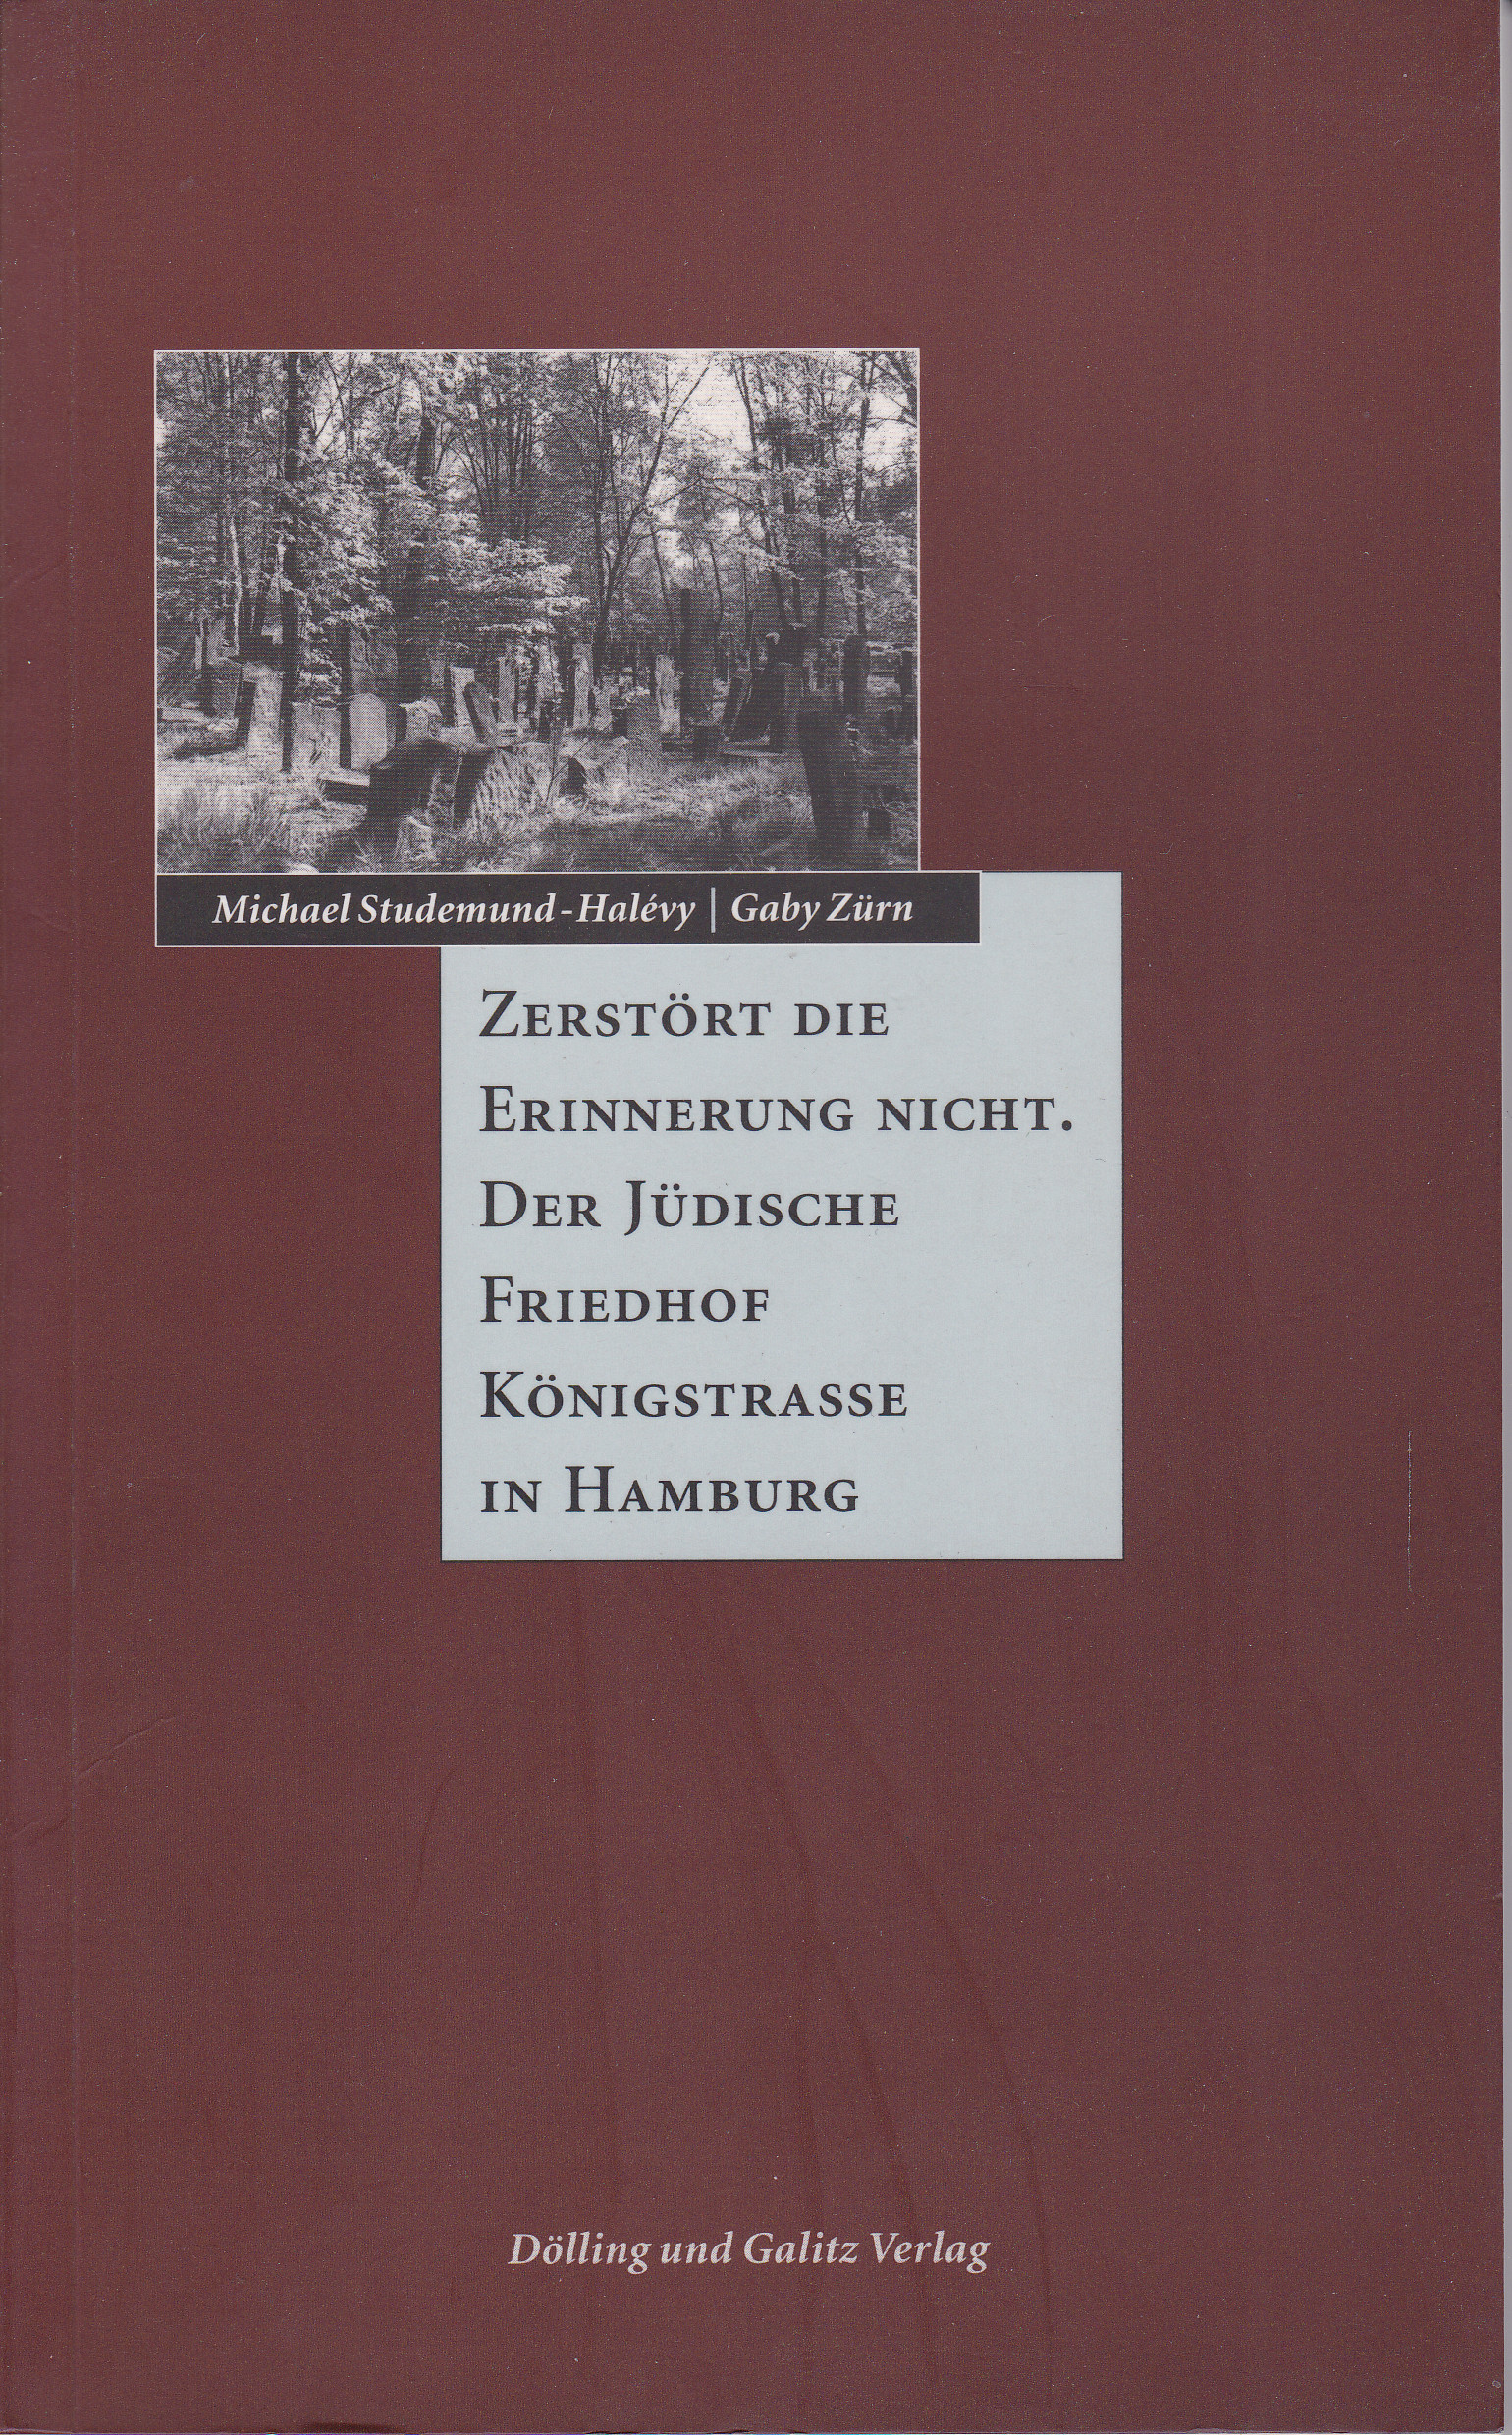 Zerstört die Erinnerung nicht. Der jüdische Friedhof Königstrasse in Hamburg - Studemund-Halevy, Michael; Gaby Zürn